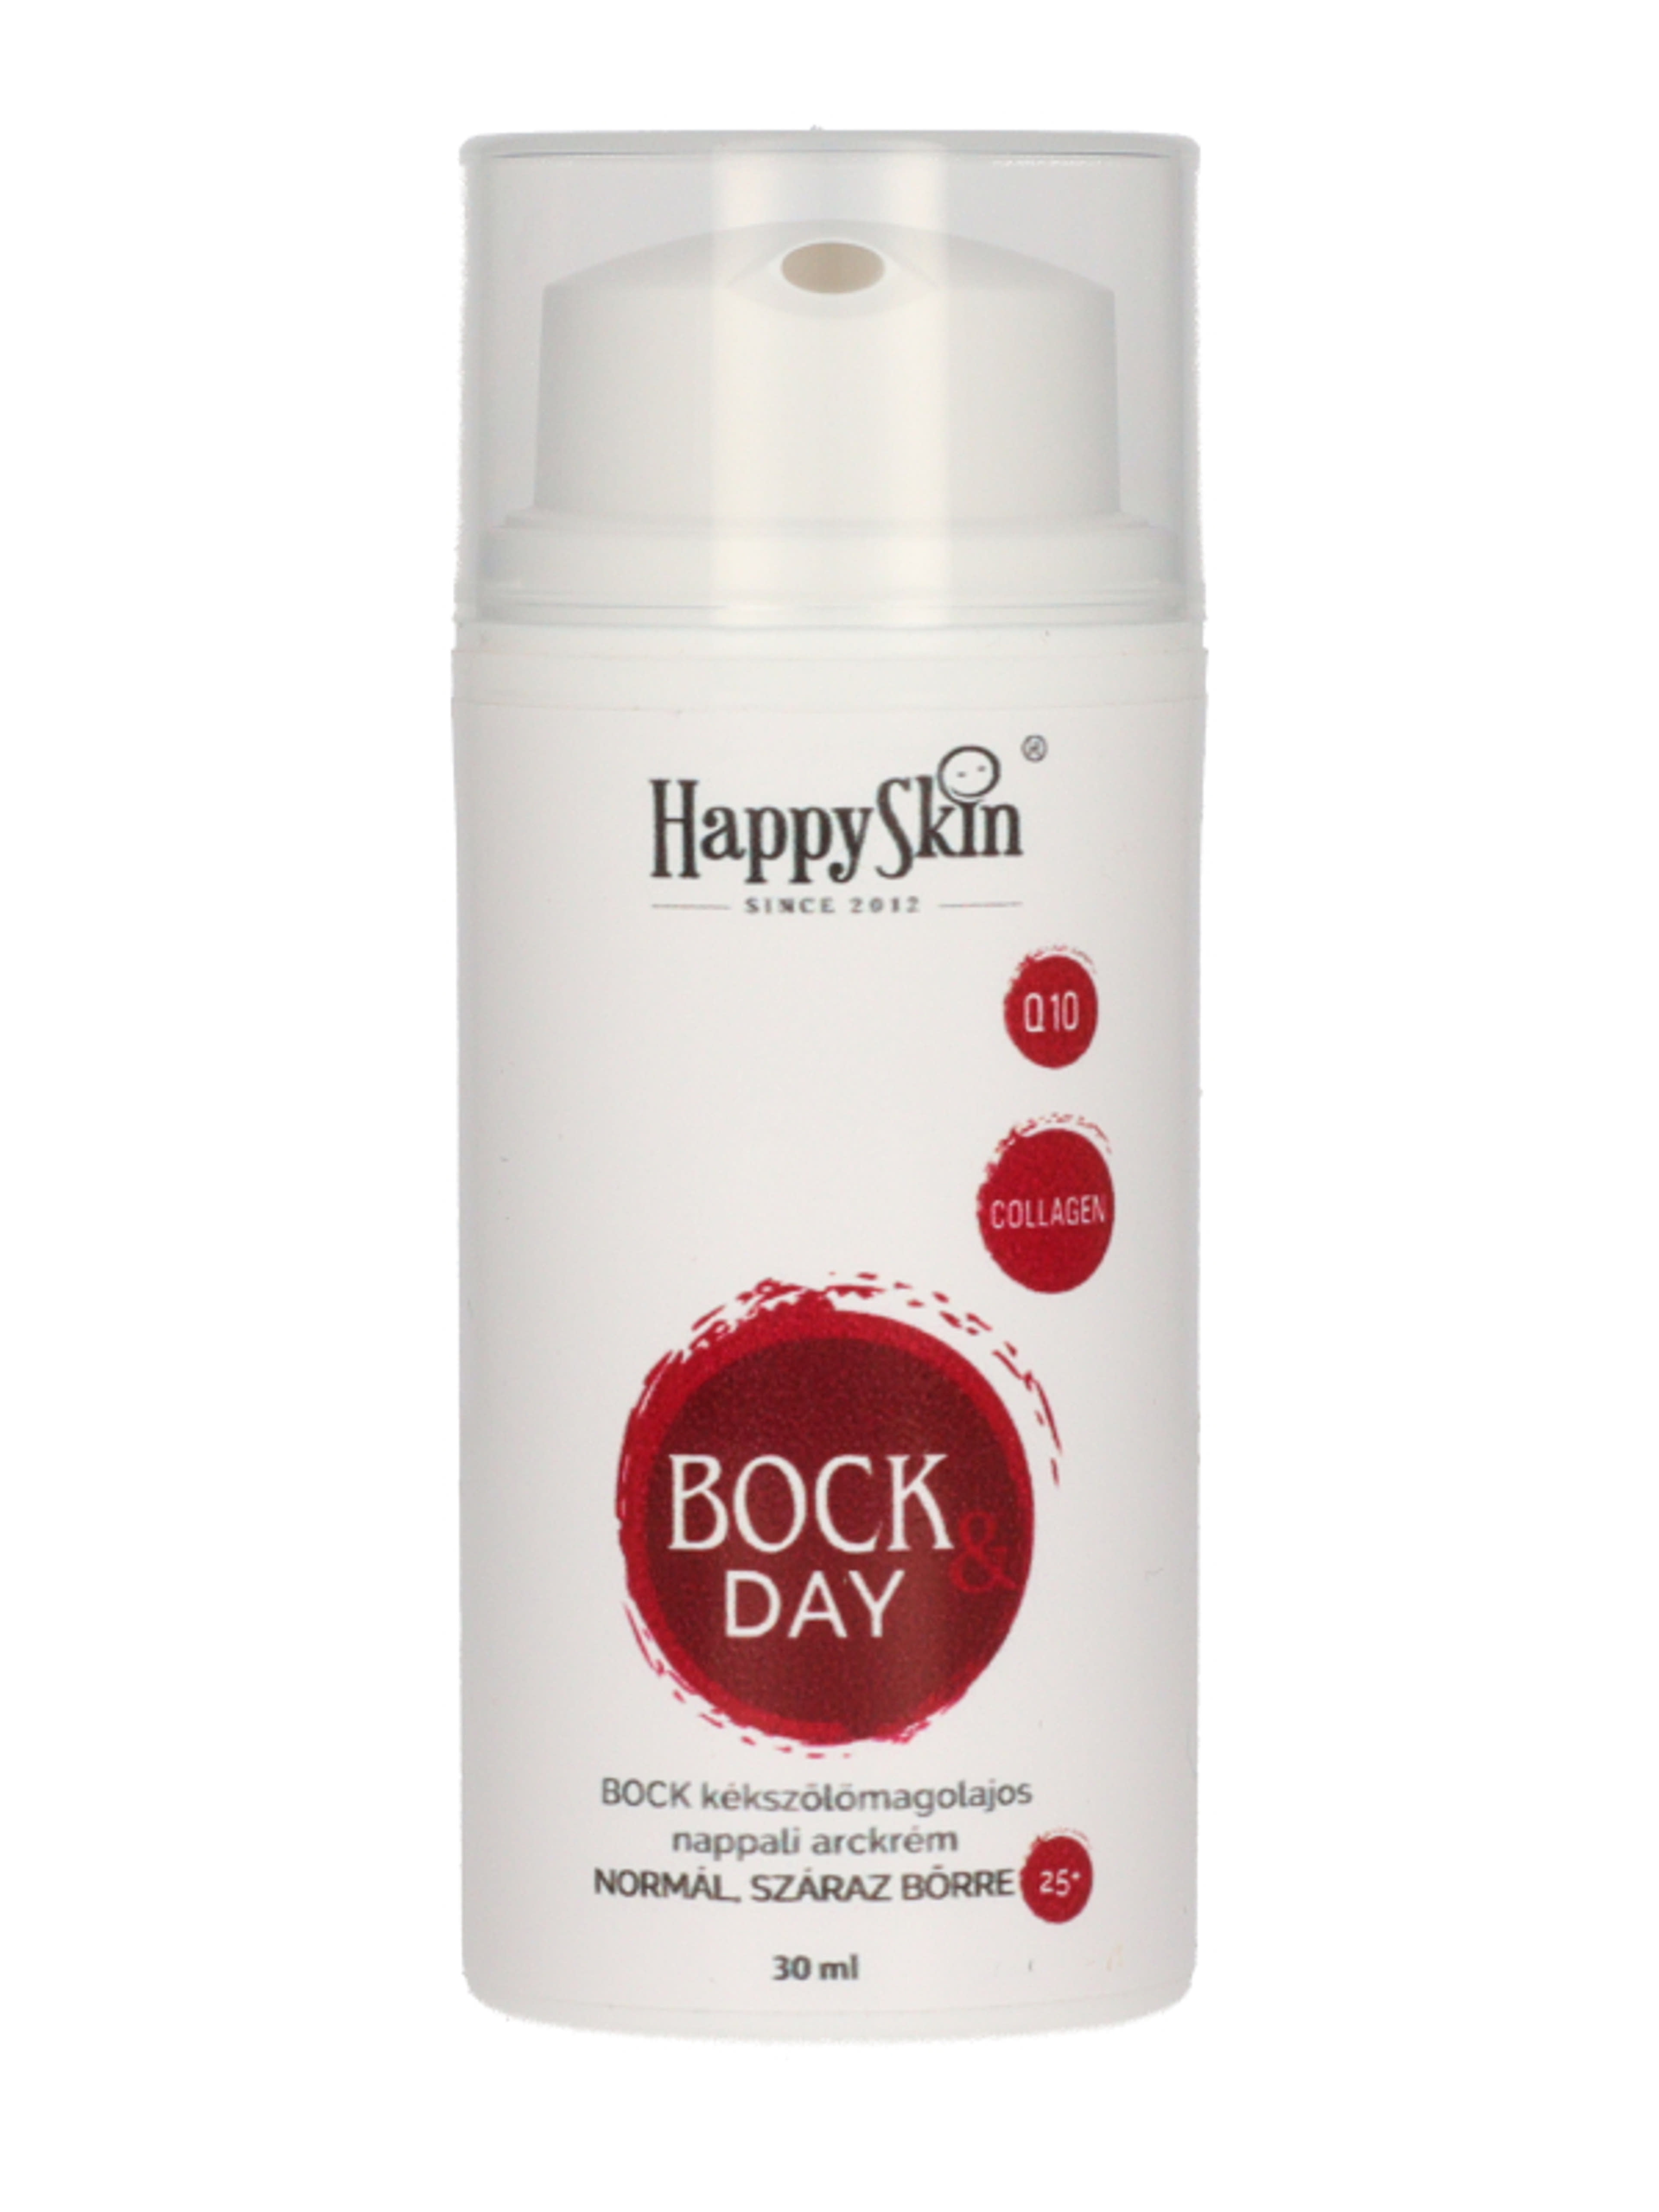 HappySkin Bock nappali arckrém kékszölőmagolajos - 30 ml-1